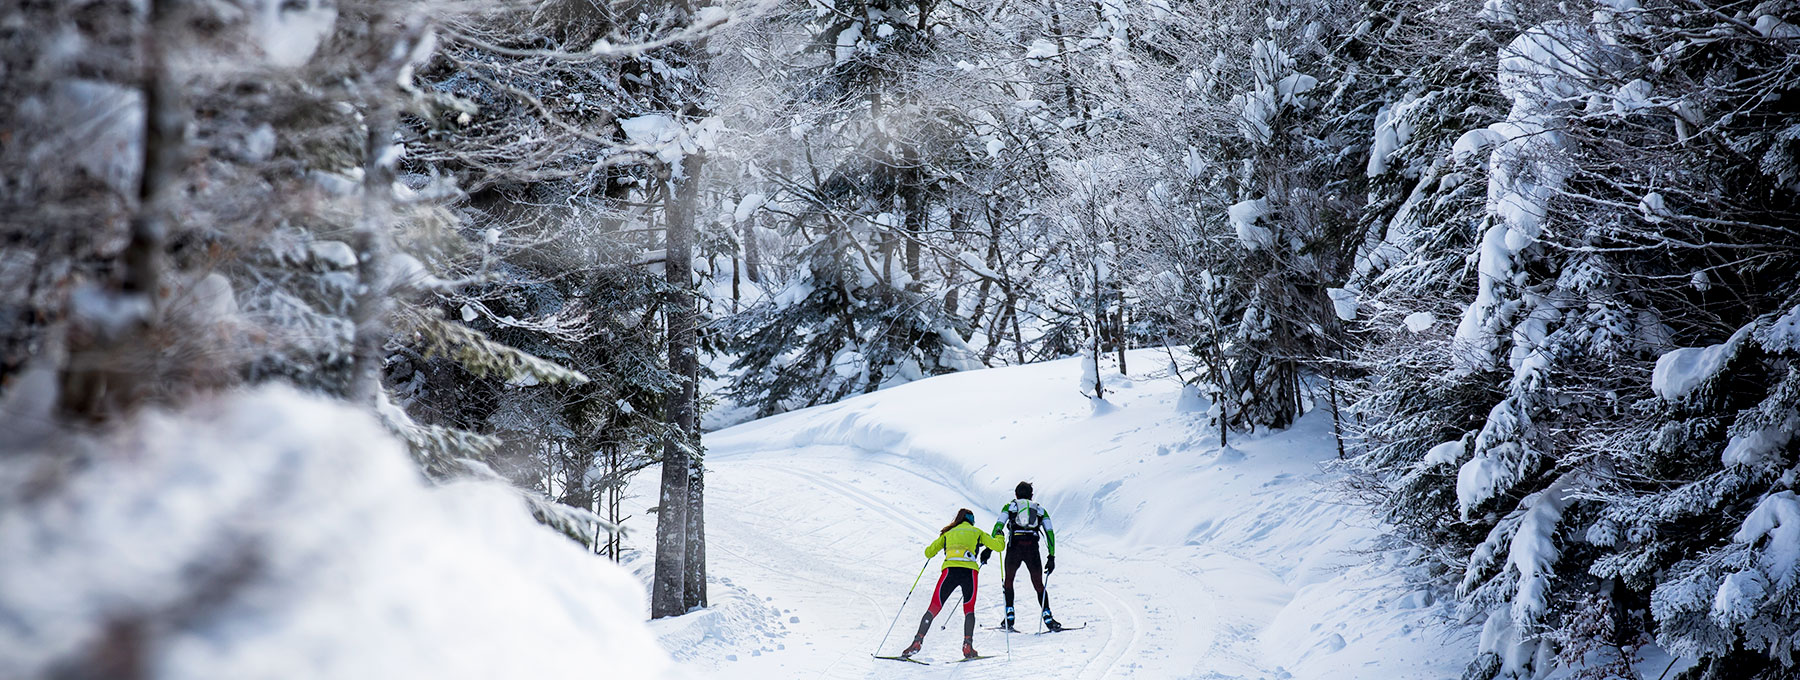 L’Espace Somport offre une diversité de pistes tracées en alternatif et en skating pour des skieurs débutants aux fondeurs confirmés